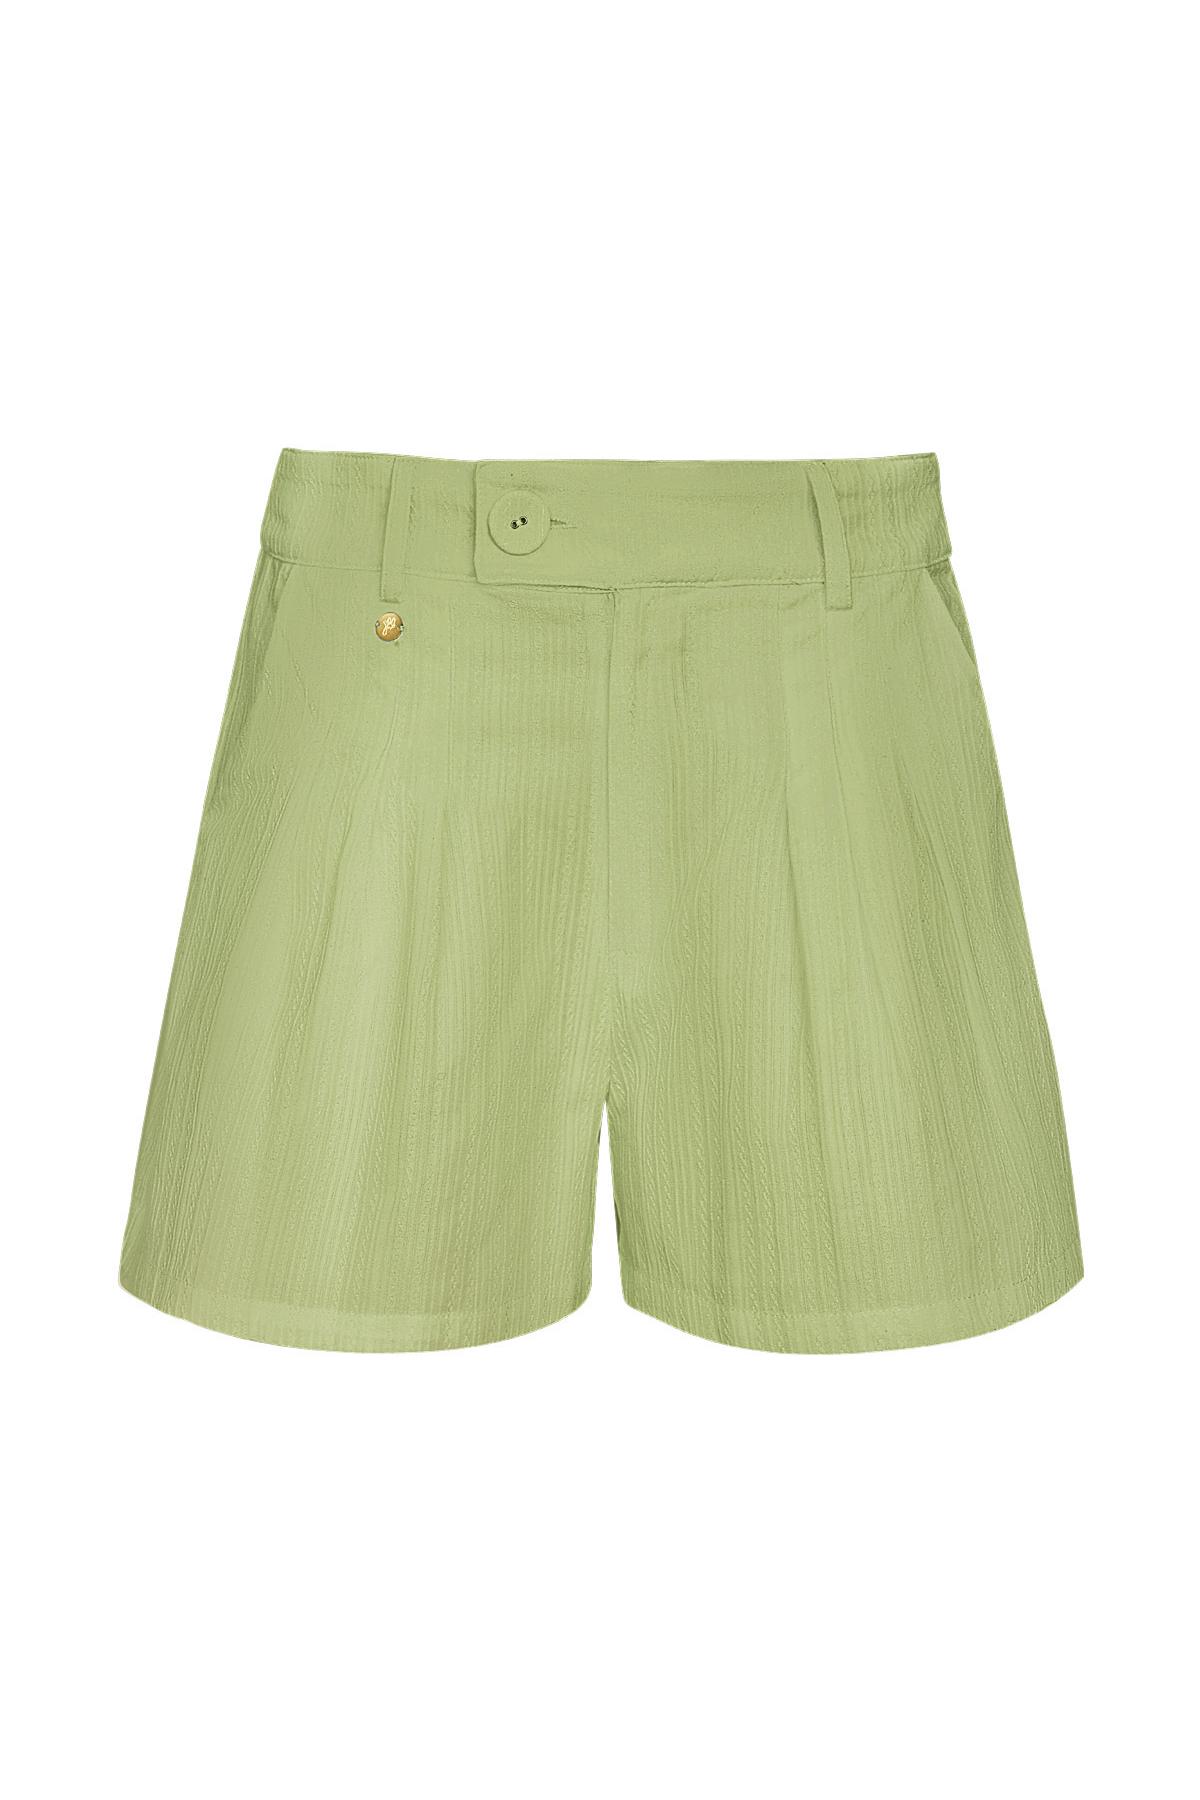 Shorts mit Knopfdetail - grün S